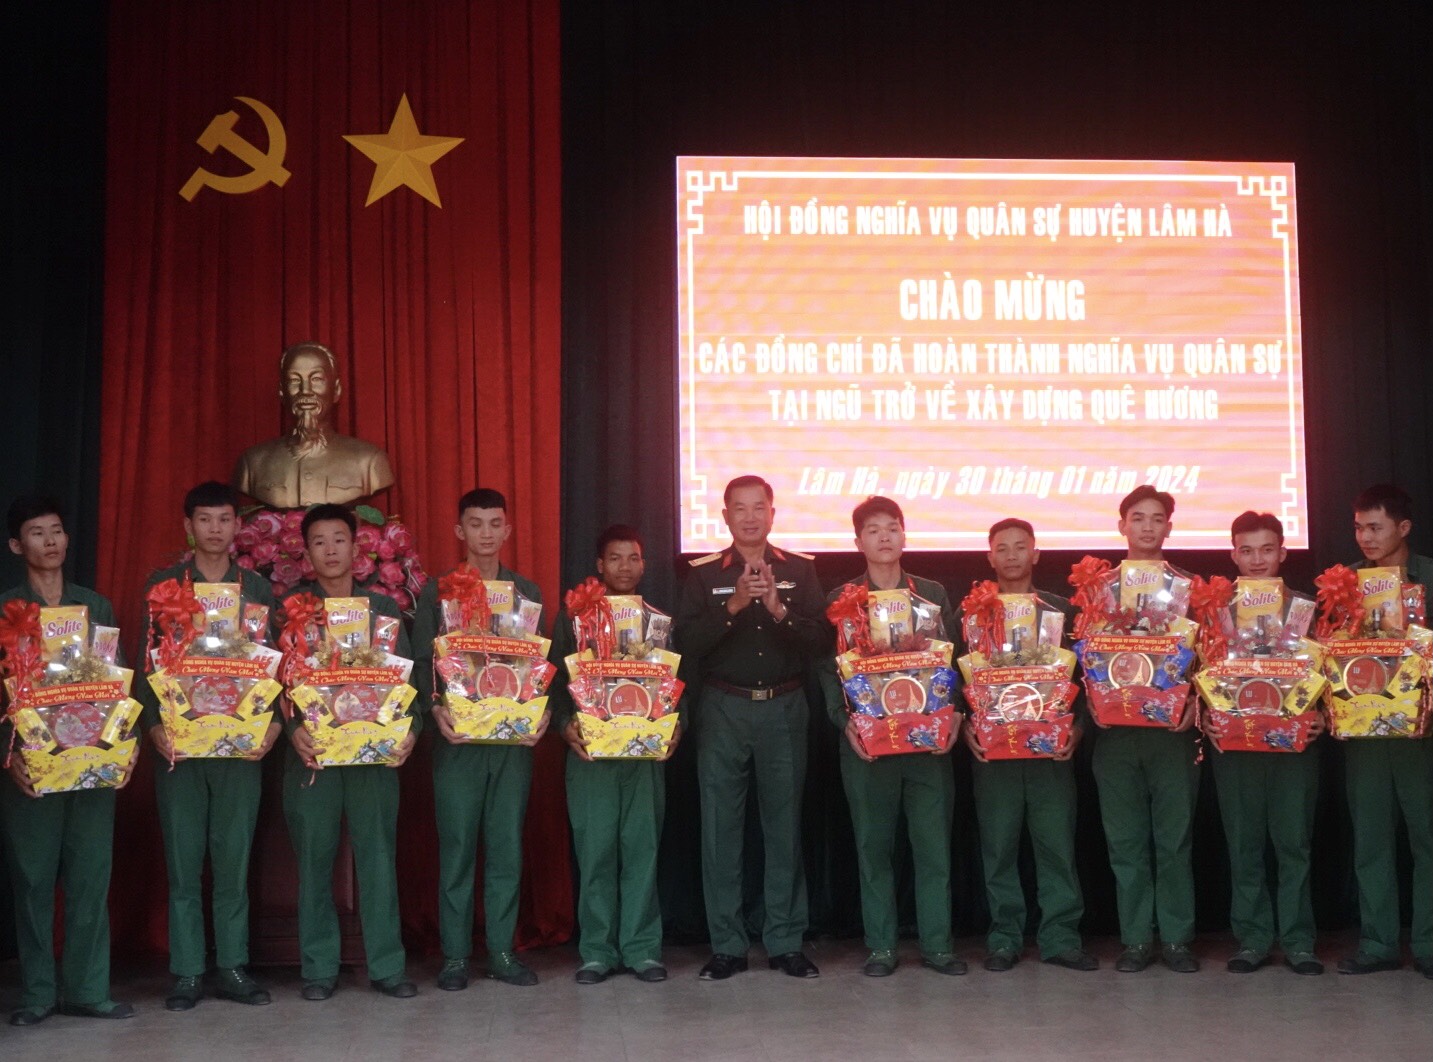 Thượng tá Trịnh Ngọc Thanh - UVBTV HU- Chỉ huy trưởng Ban CHQS huyện Lâm Hà trao quà cho các quân nhân xuất ngũ